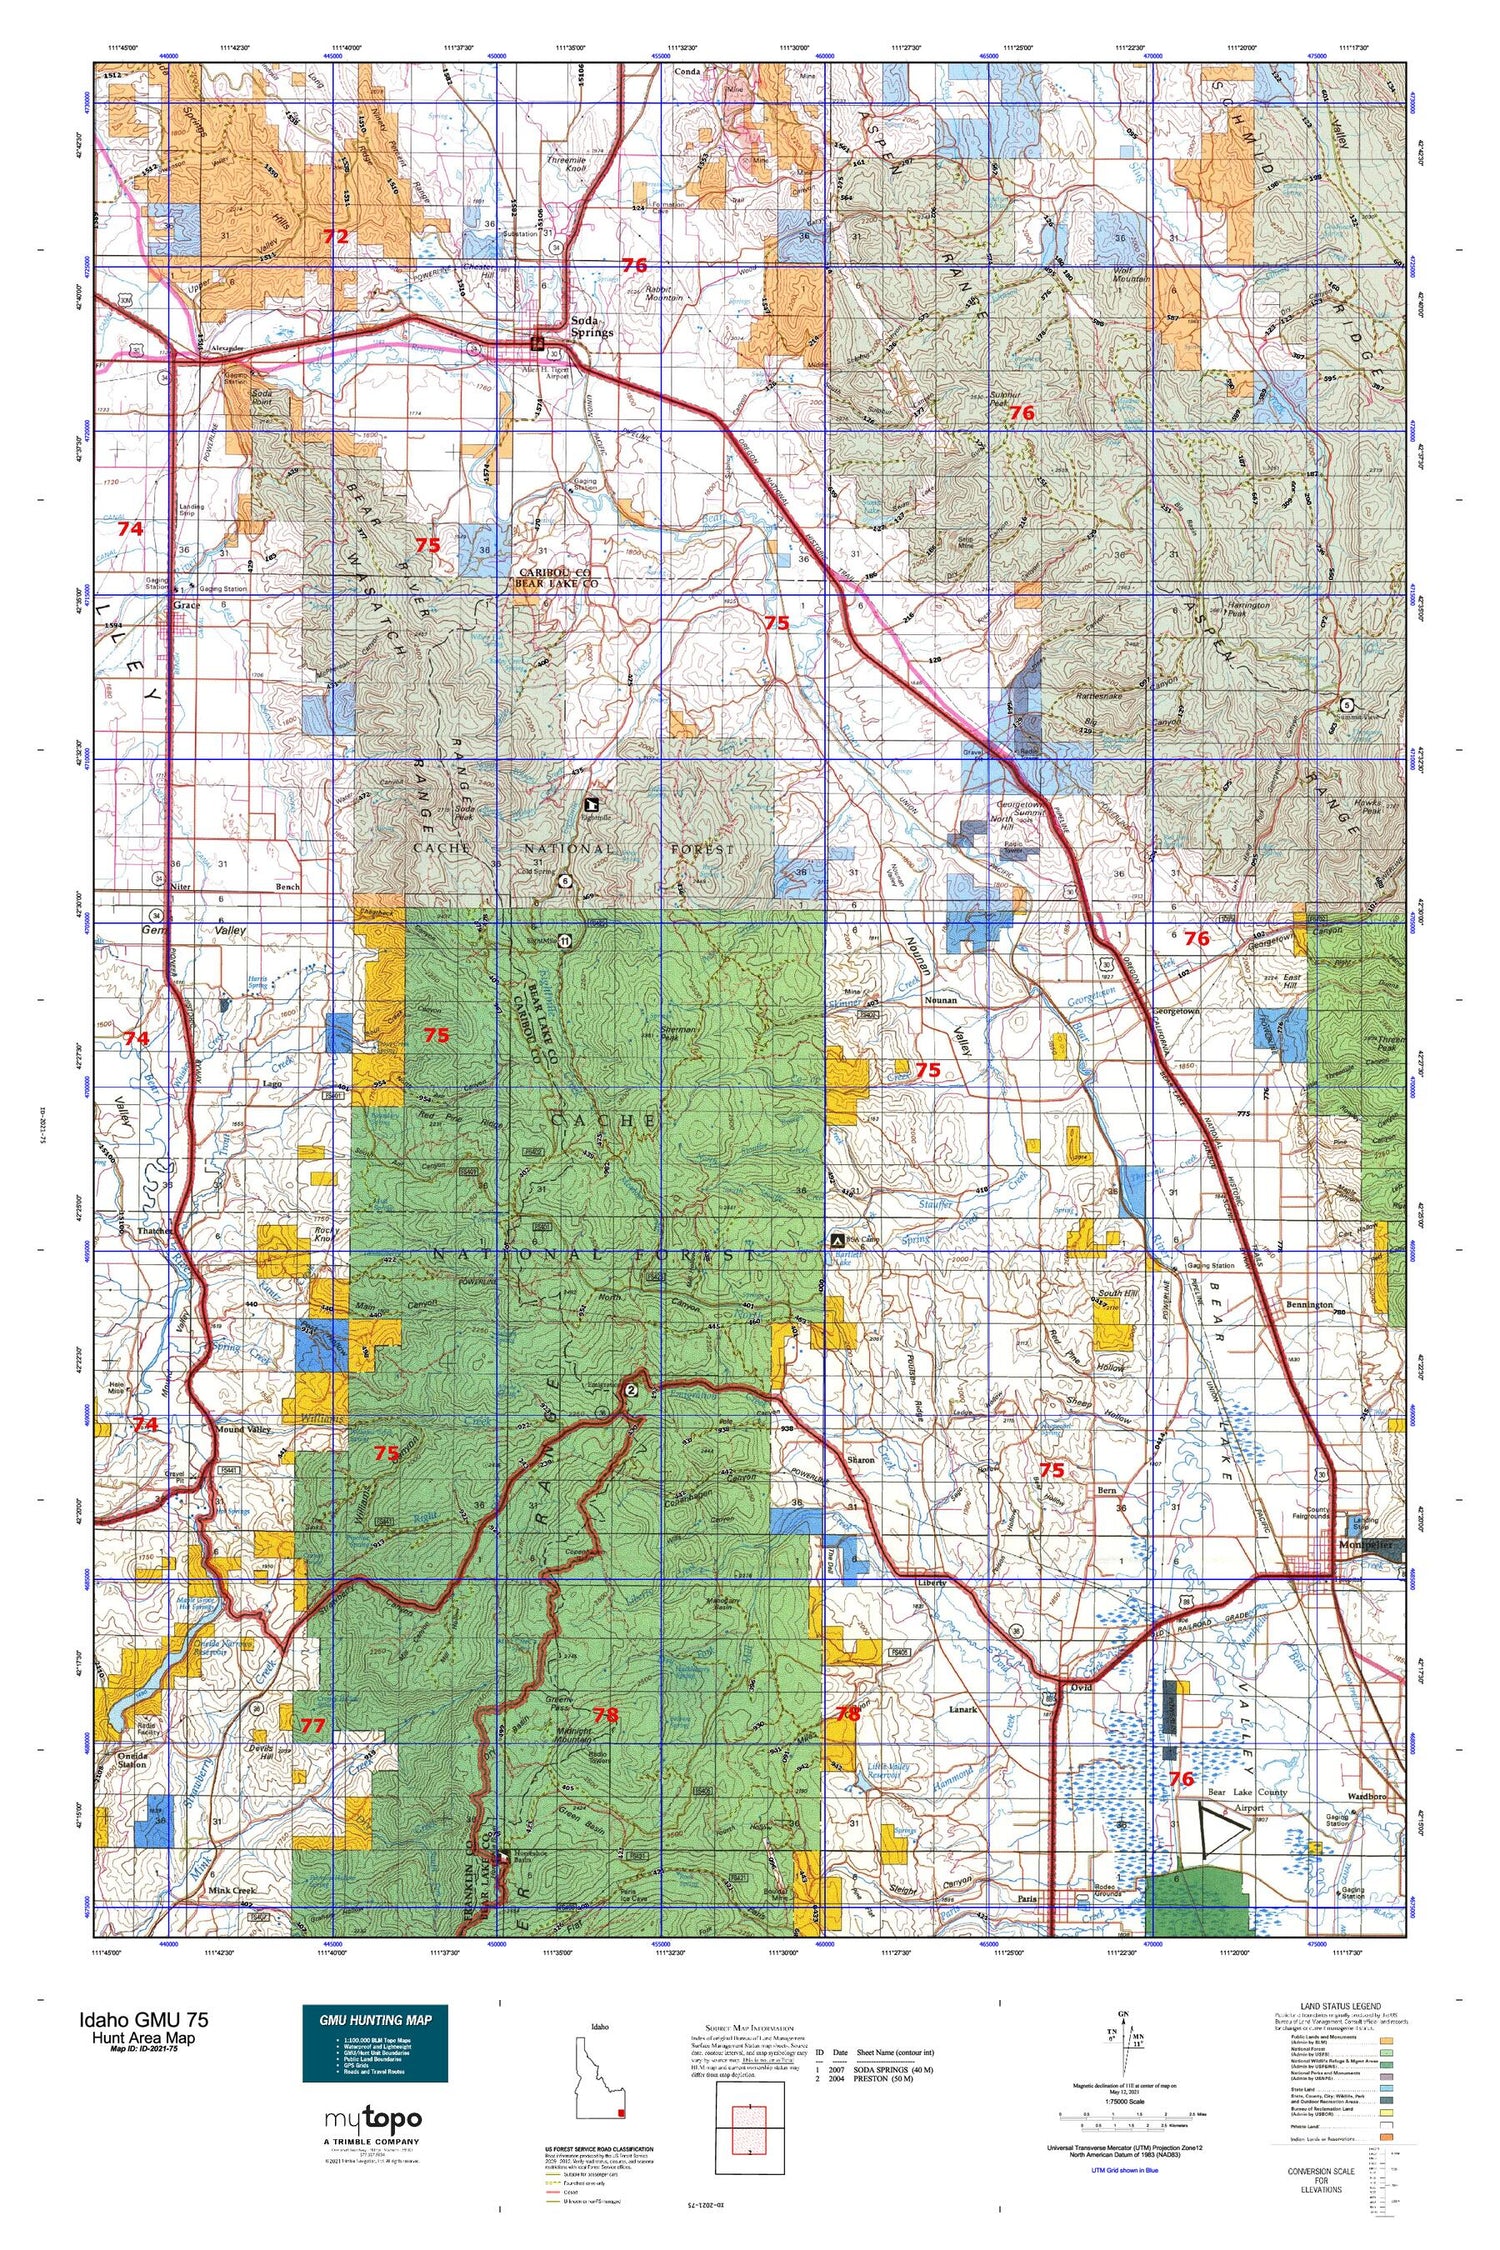 Idaho GMU 75 Map Image